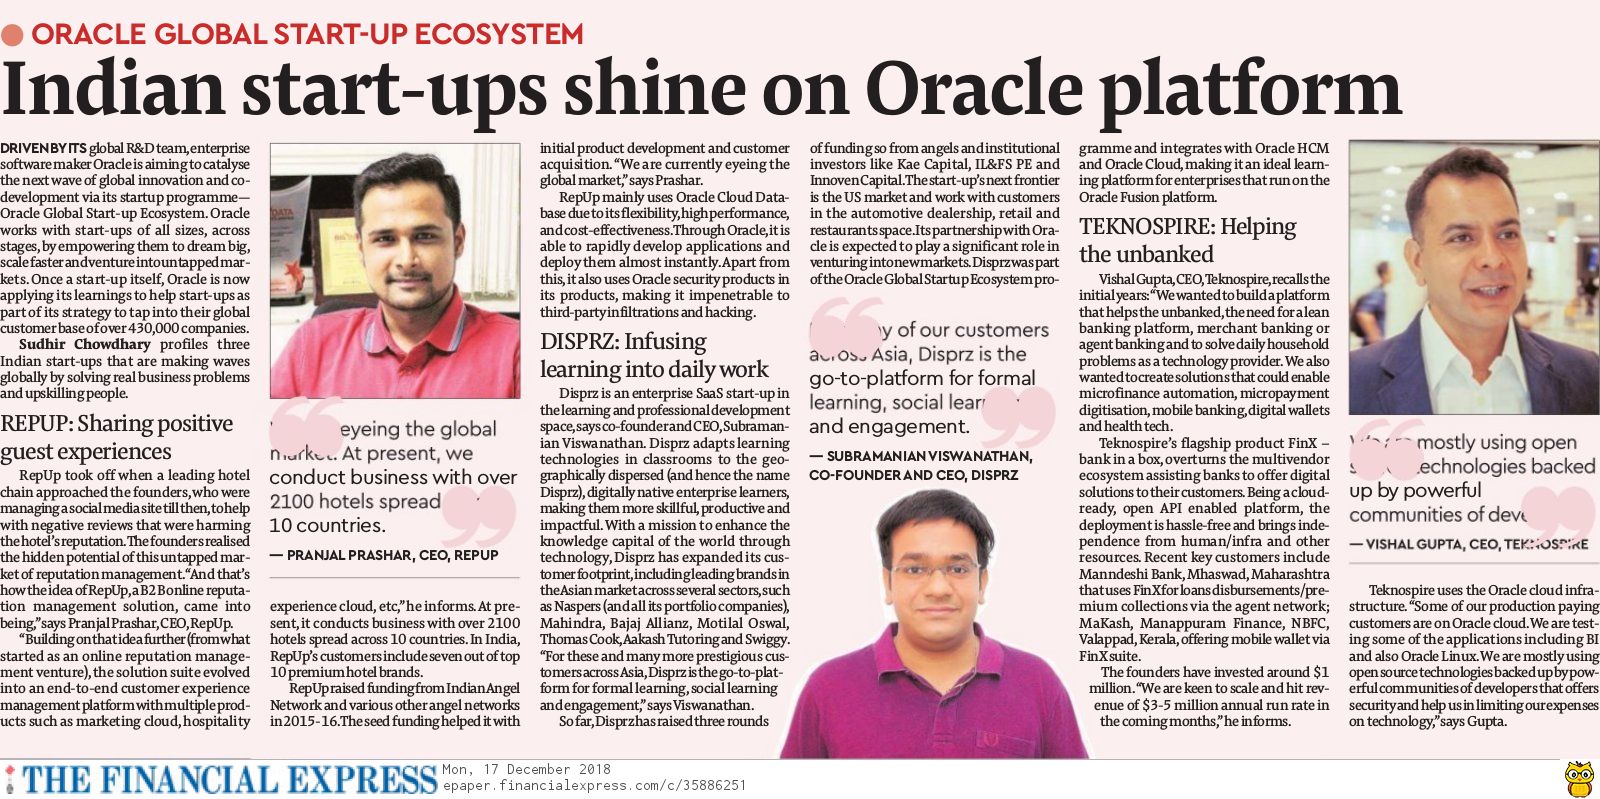 Indian Start-Ups Shine on Oracle Platform